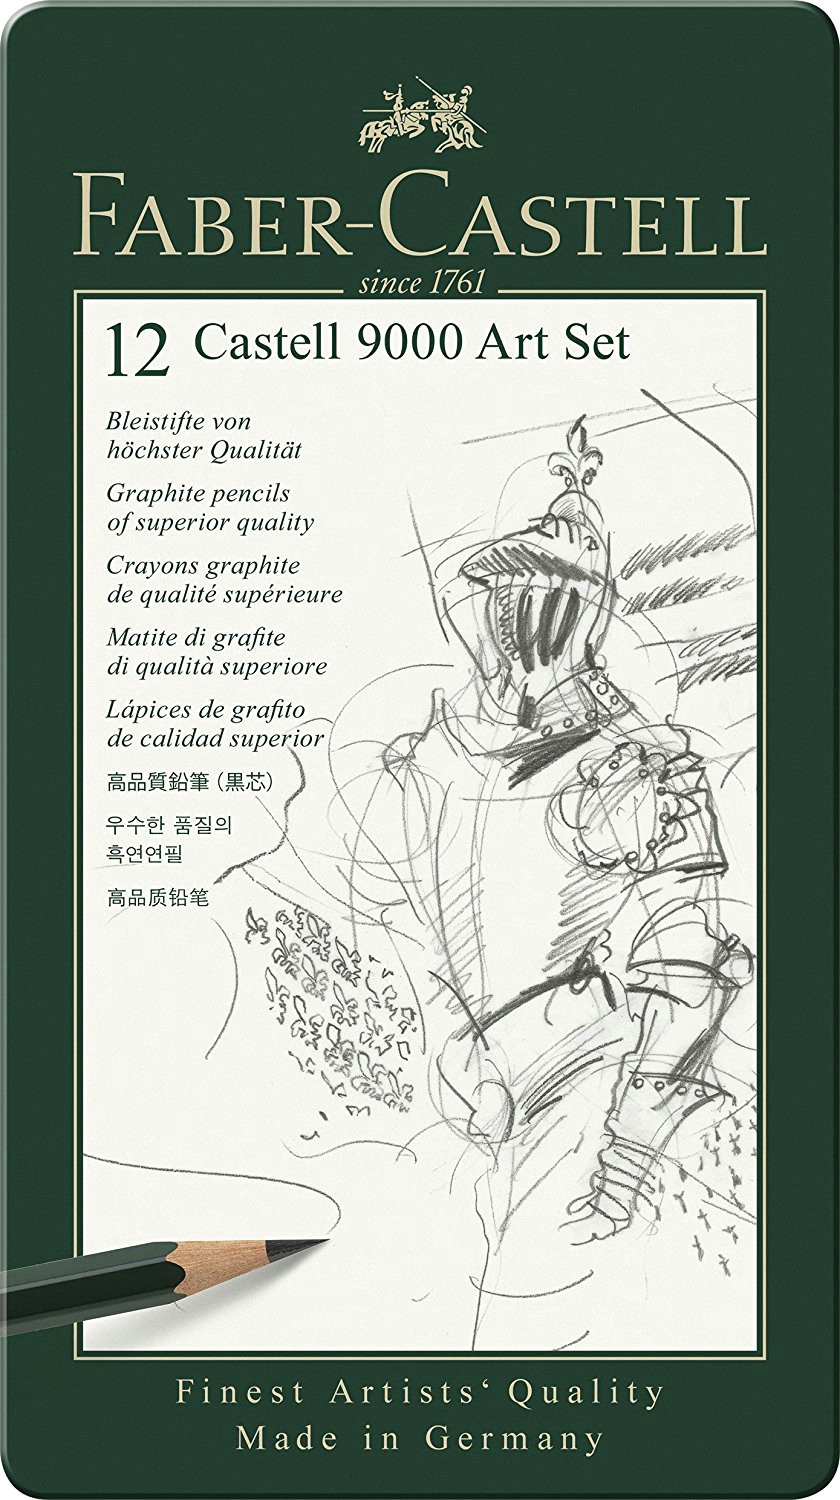 faber castell 119065 bleistift castell 9000 12er art set amazon de burobedarf schreibwaren